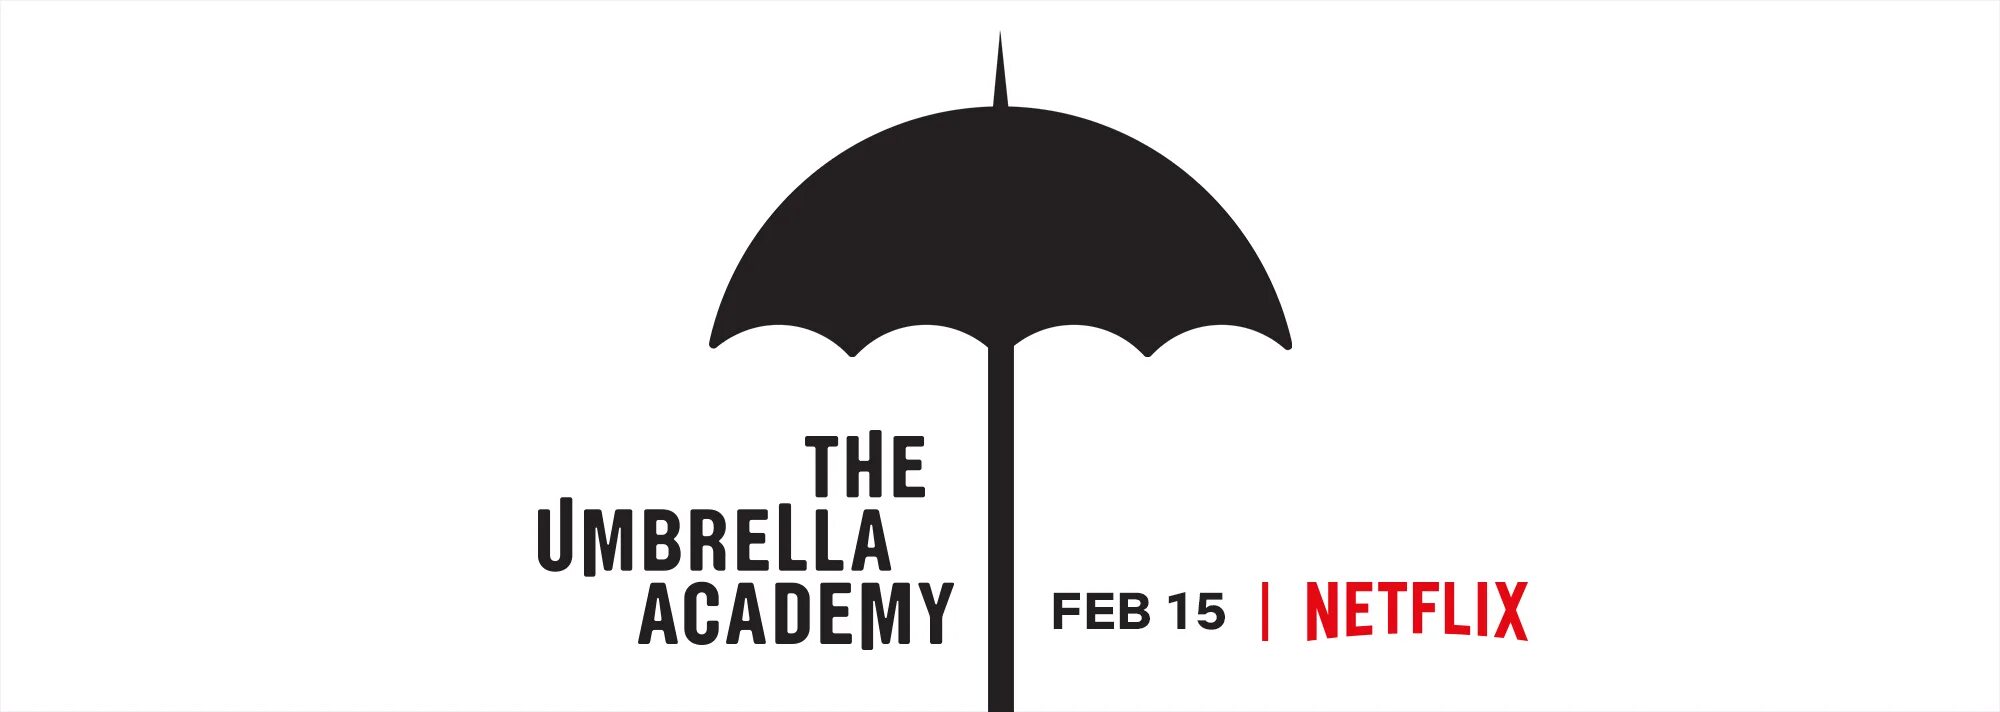 I need umbrella. Академия Амбрелла. Академия Амбрелла зонтик. Академия Амбрелла эмблема. Зонт с логотипом.